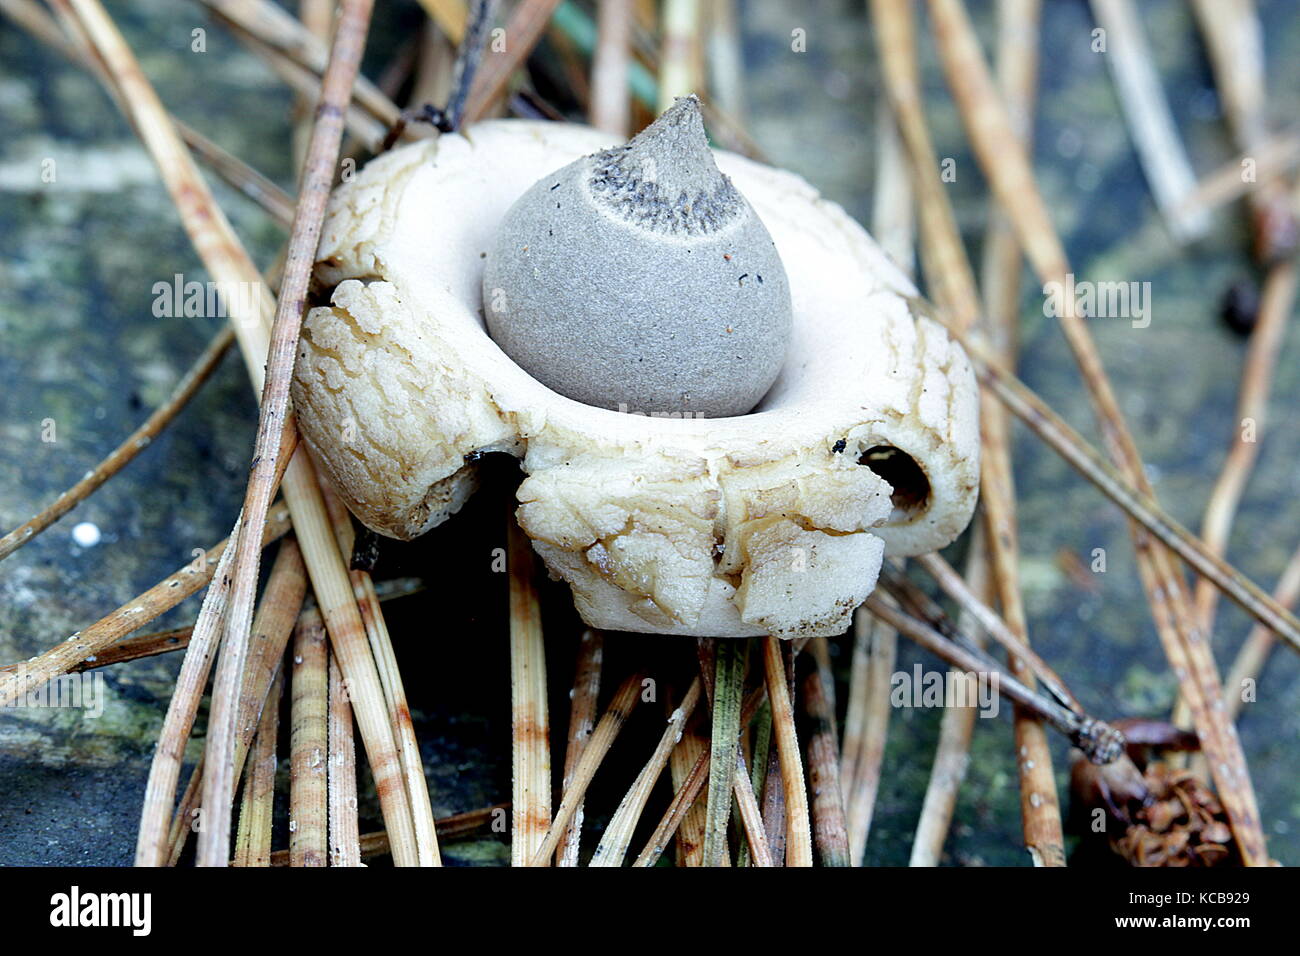 New Zealand bush fungi, earthstar Stock Photo